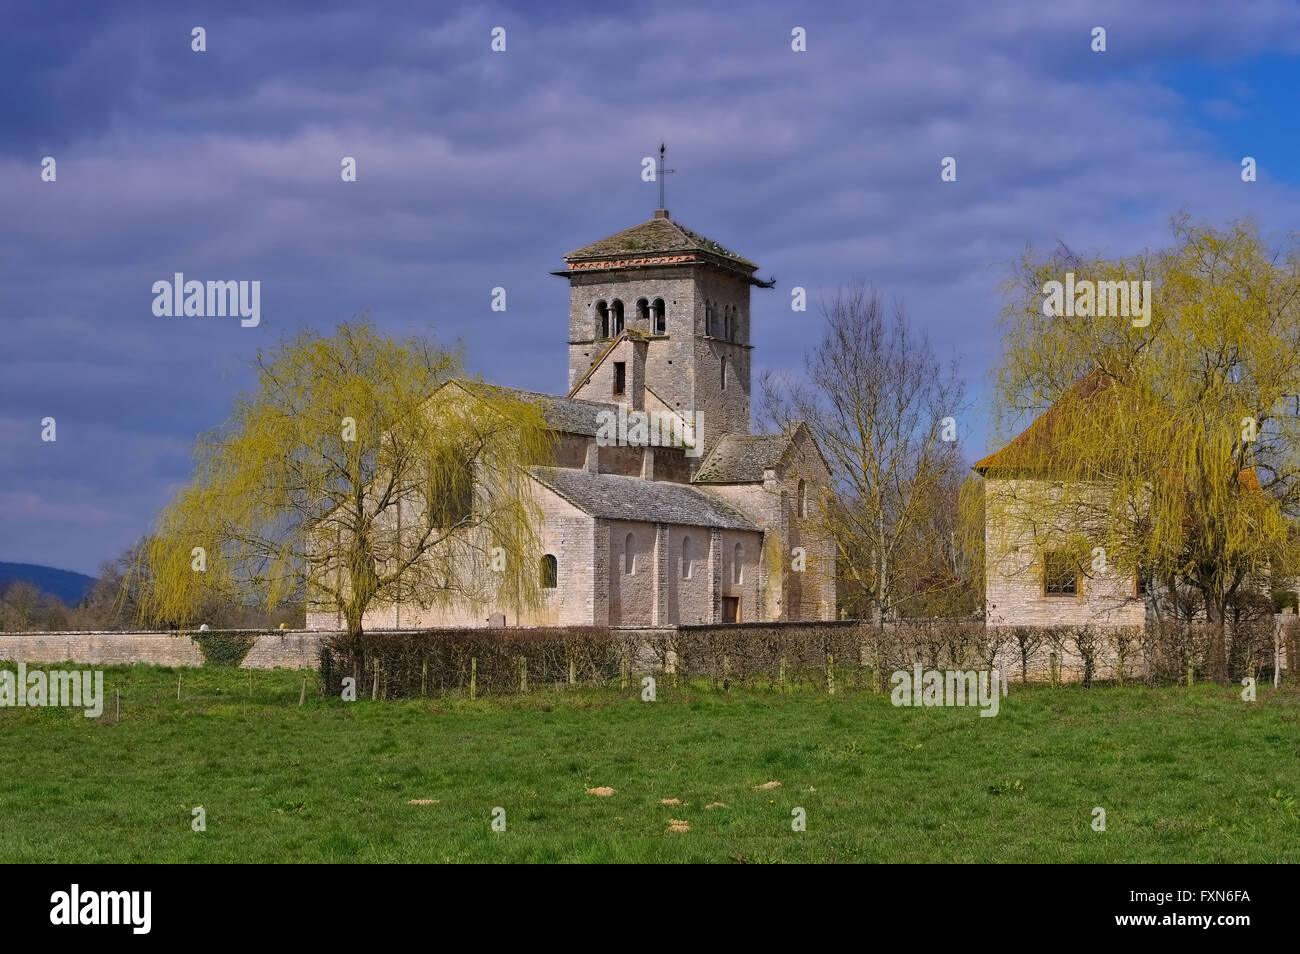 Romanische Kirche en malayo Burgund, Frankreich - románica iglesia malaya en Borgoña, Francia Foto de stock